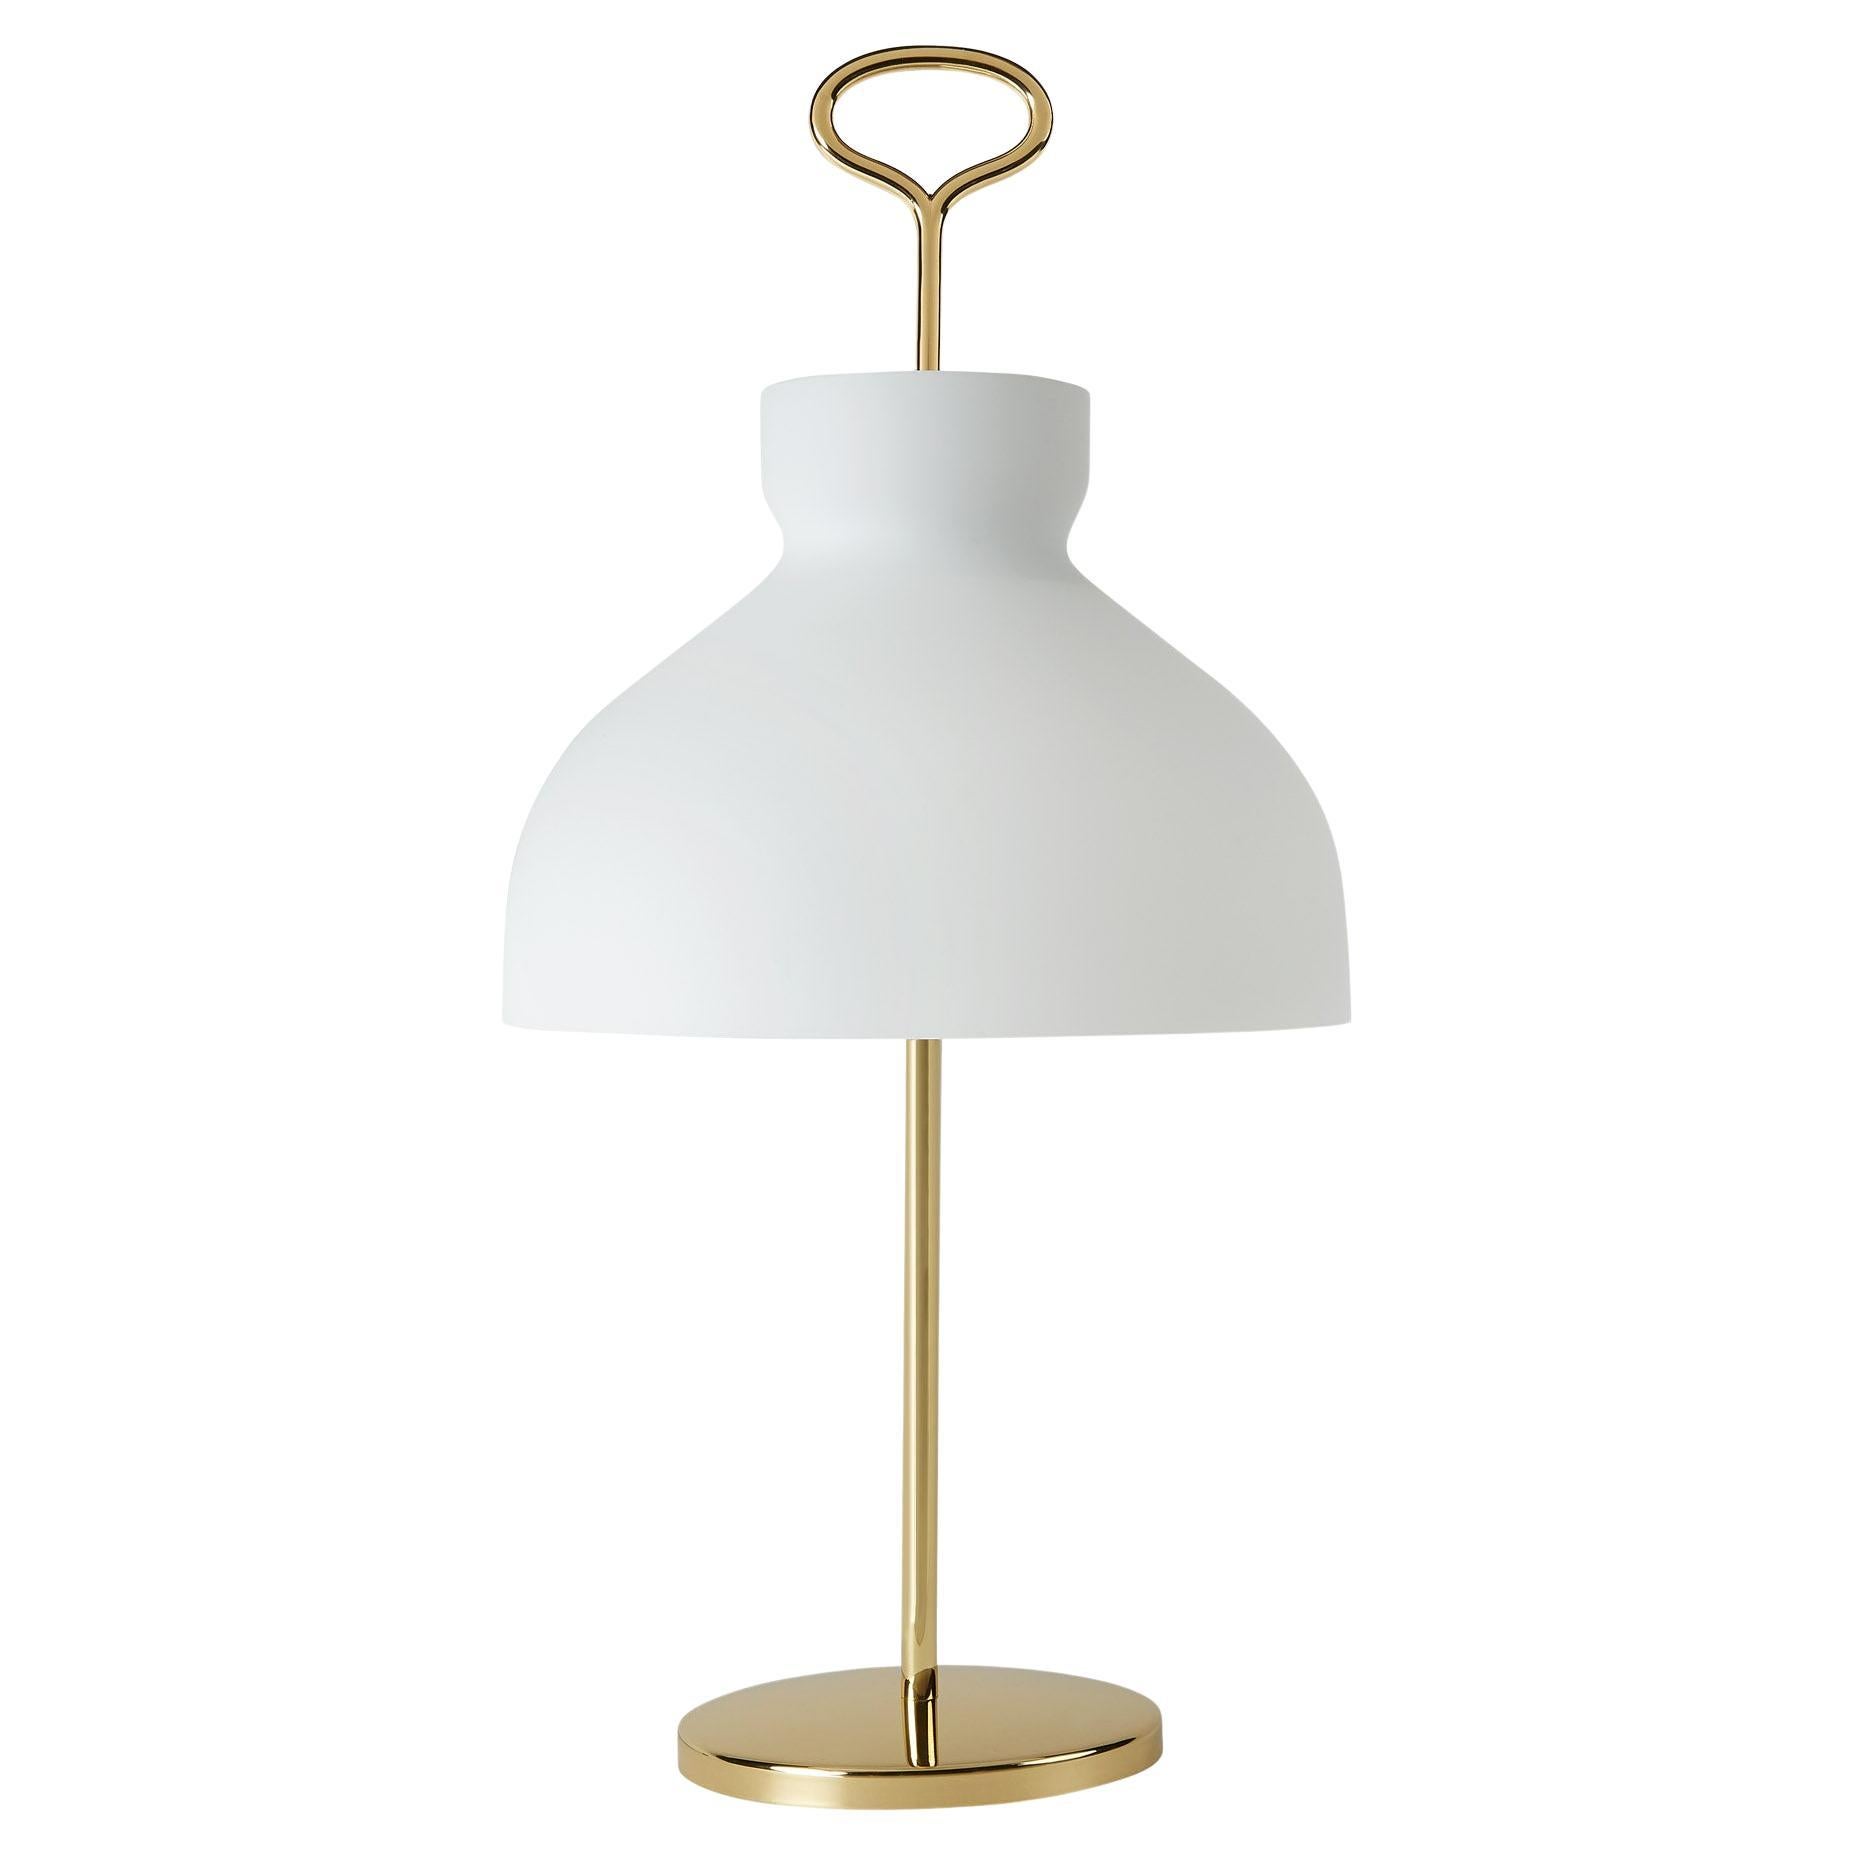 Arenzano, Table Lamp by Ignazio Gardella for TATO